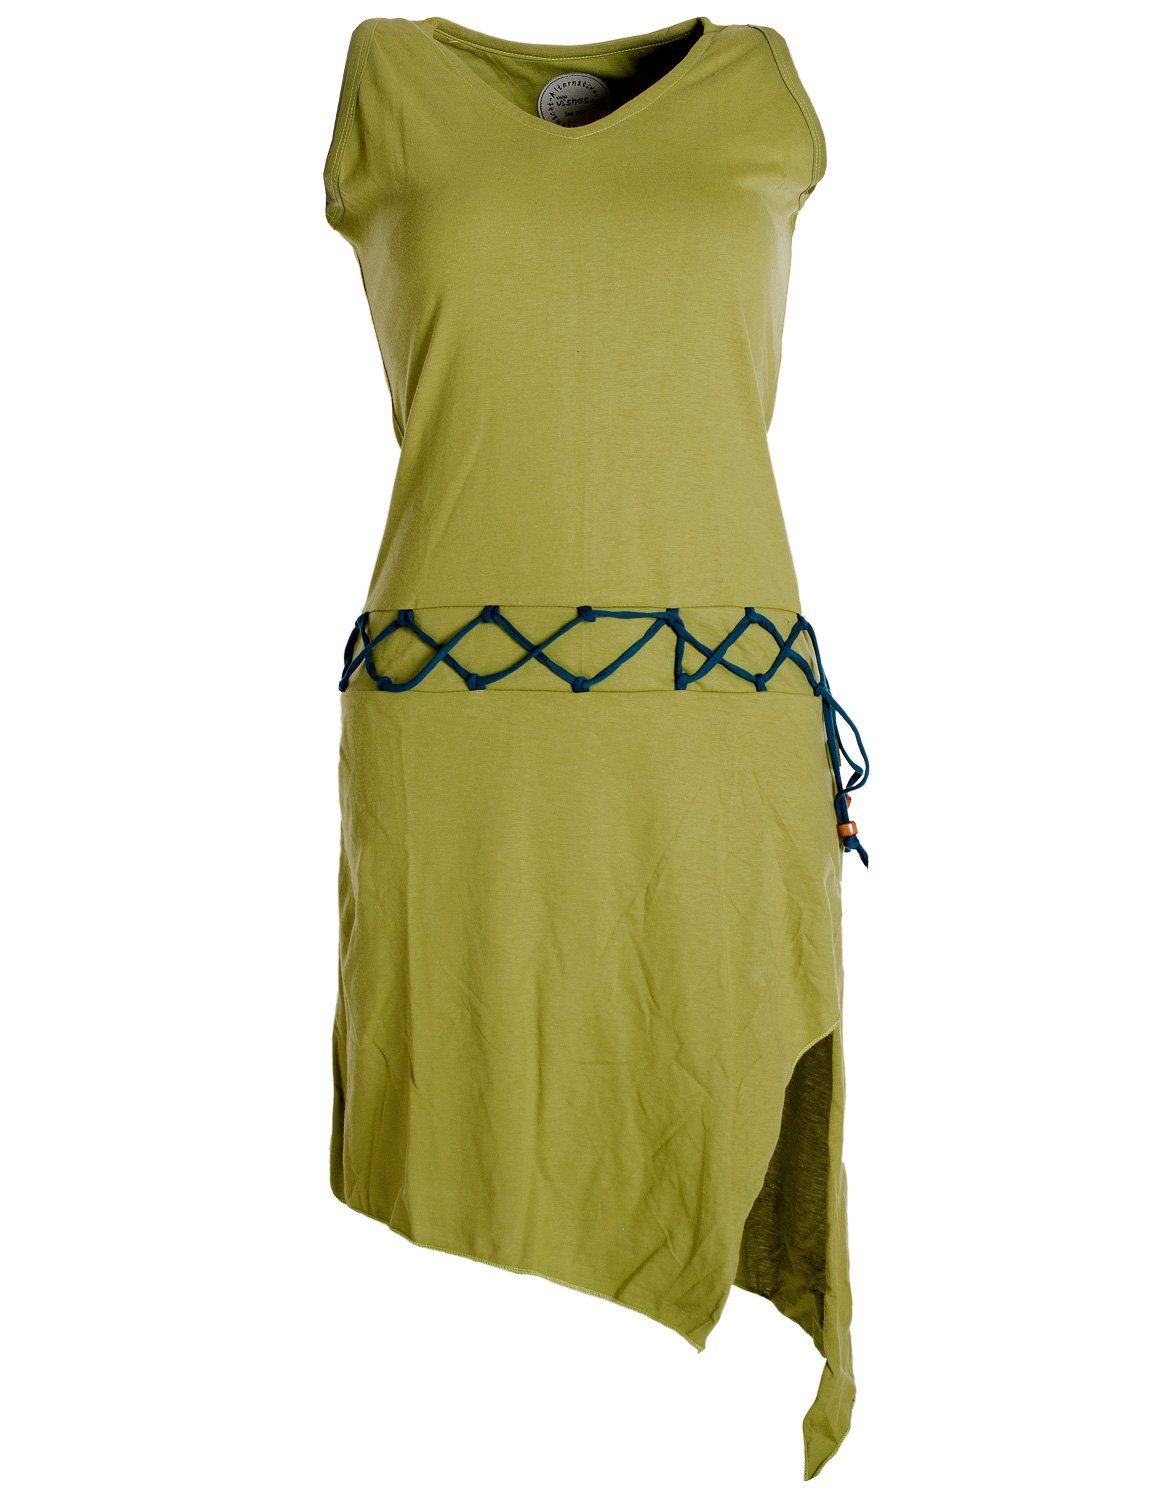 Vishes Sommerkleid Ärmelloses Kleid asymmetrisch Beinausschnitt Gürtel-Schnürung Hippie, Boho, Goa Elfen Style hellgrün | Sommerkleider